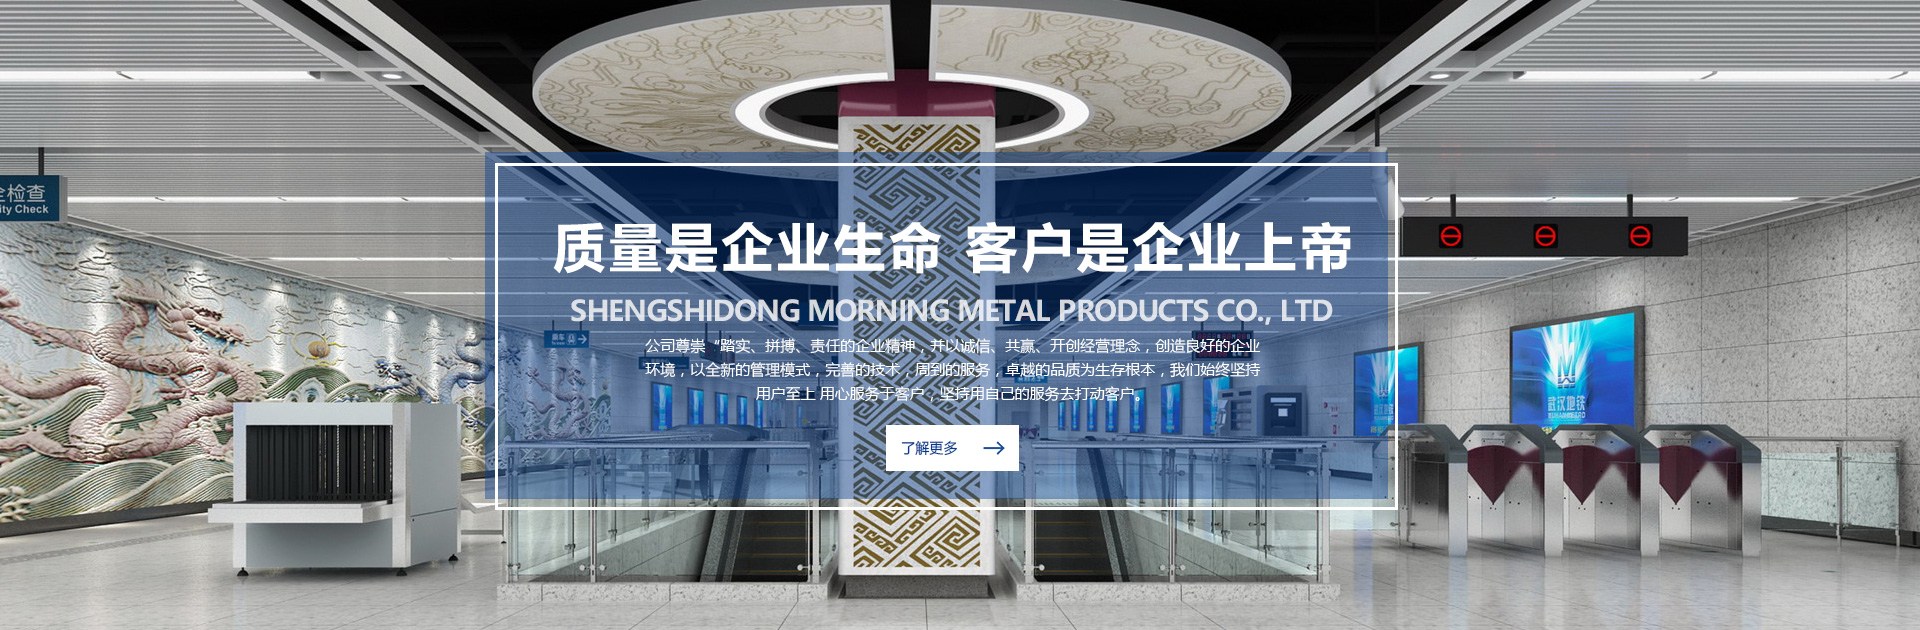 河南鋁單板廠家_河南鋁單板生產廠家